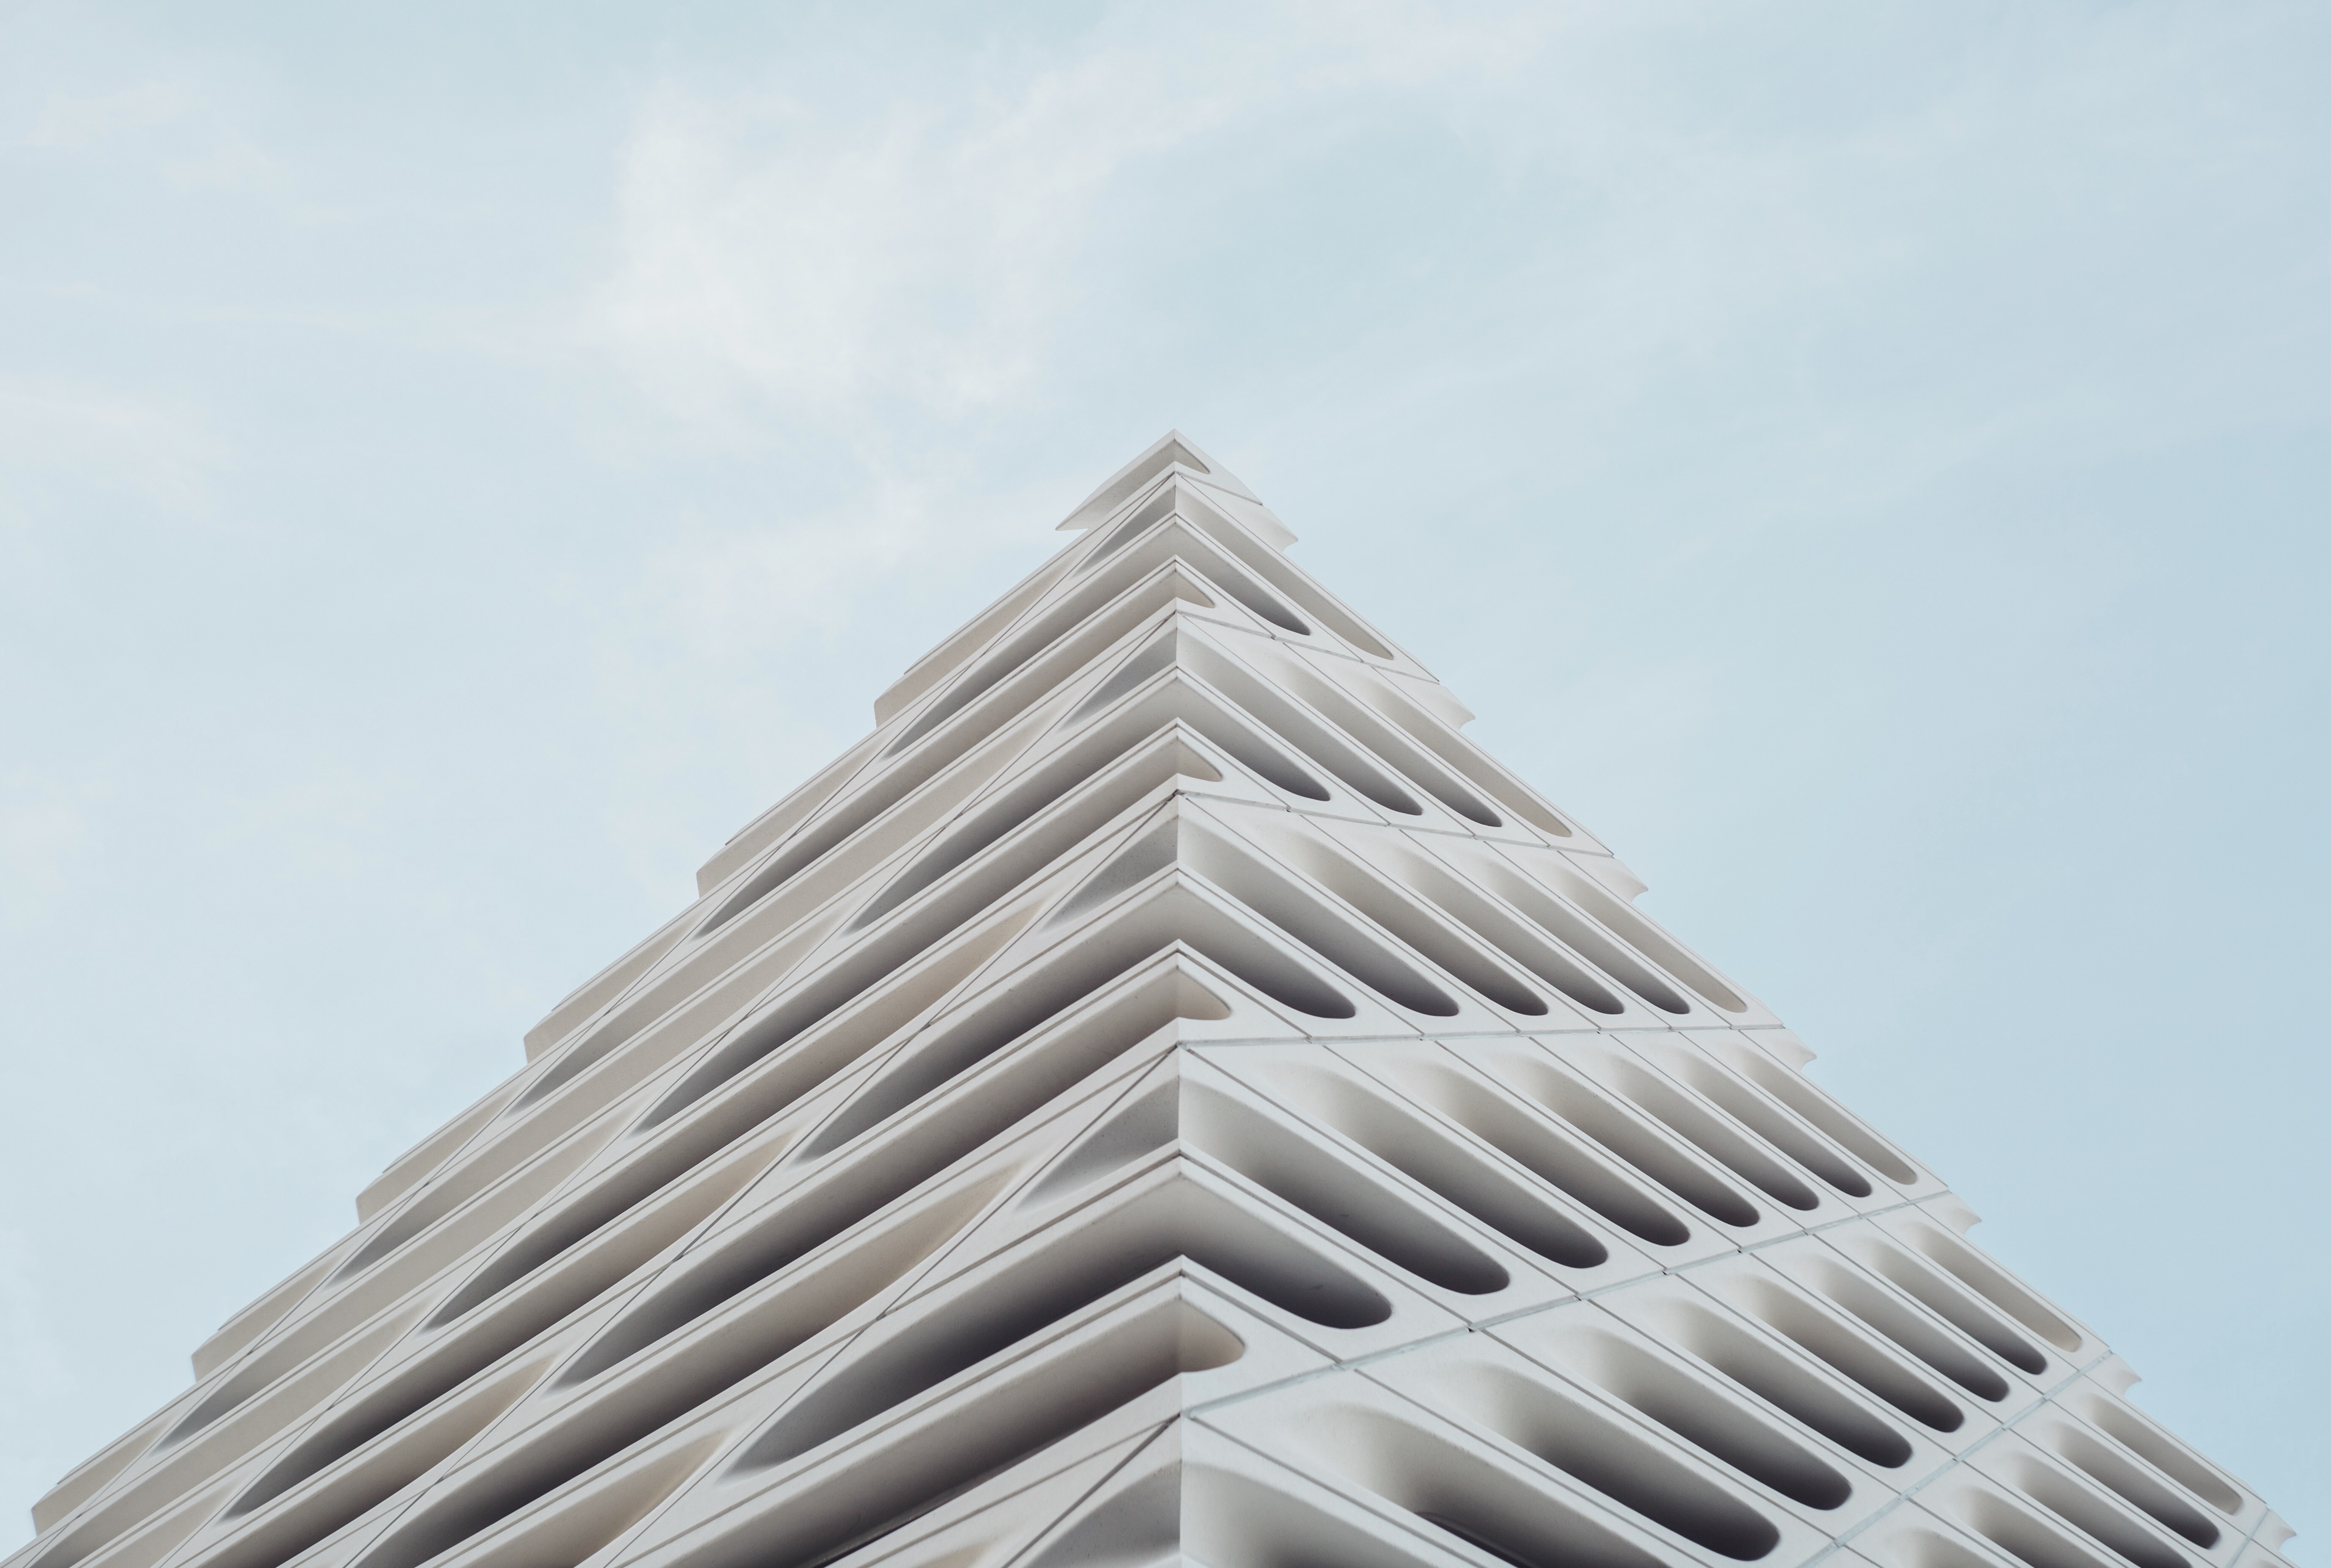 Abstract White Facade: A Striking Edge in Modern Building Design